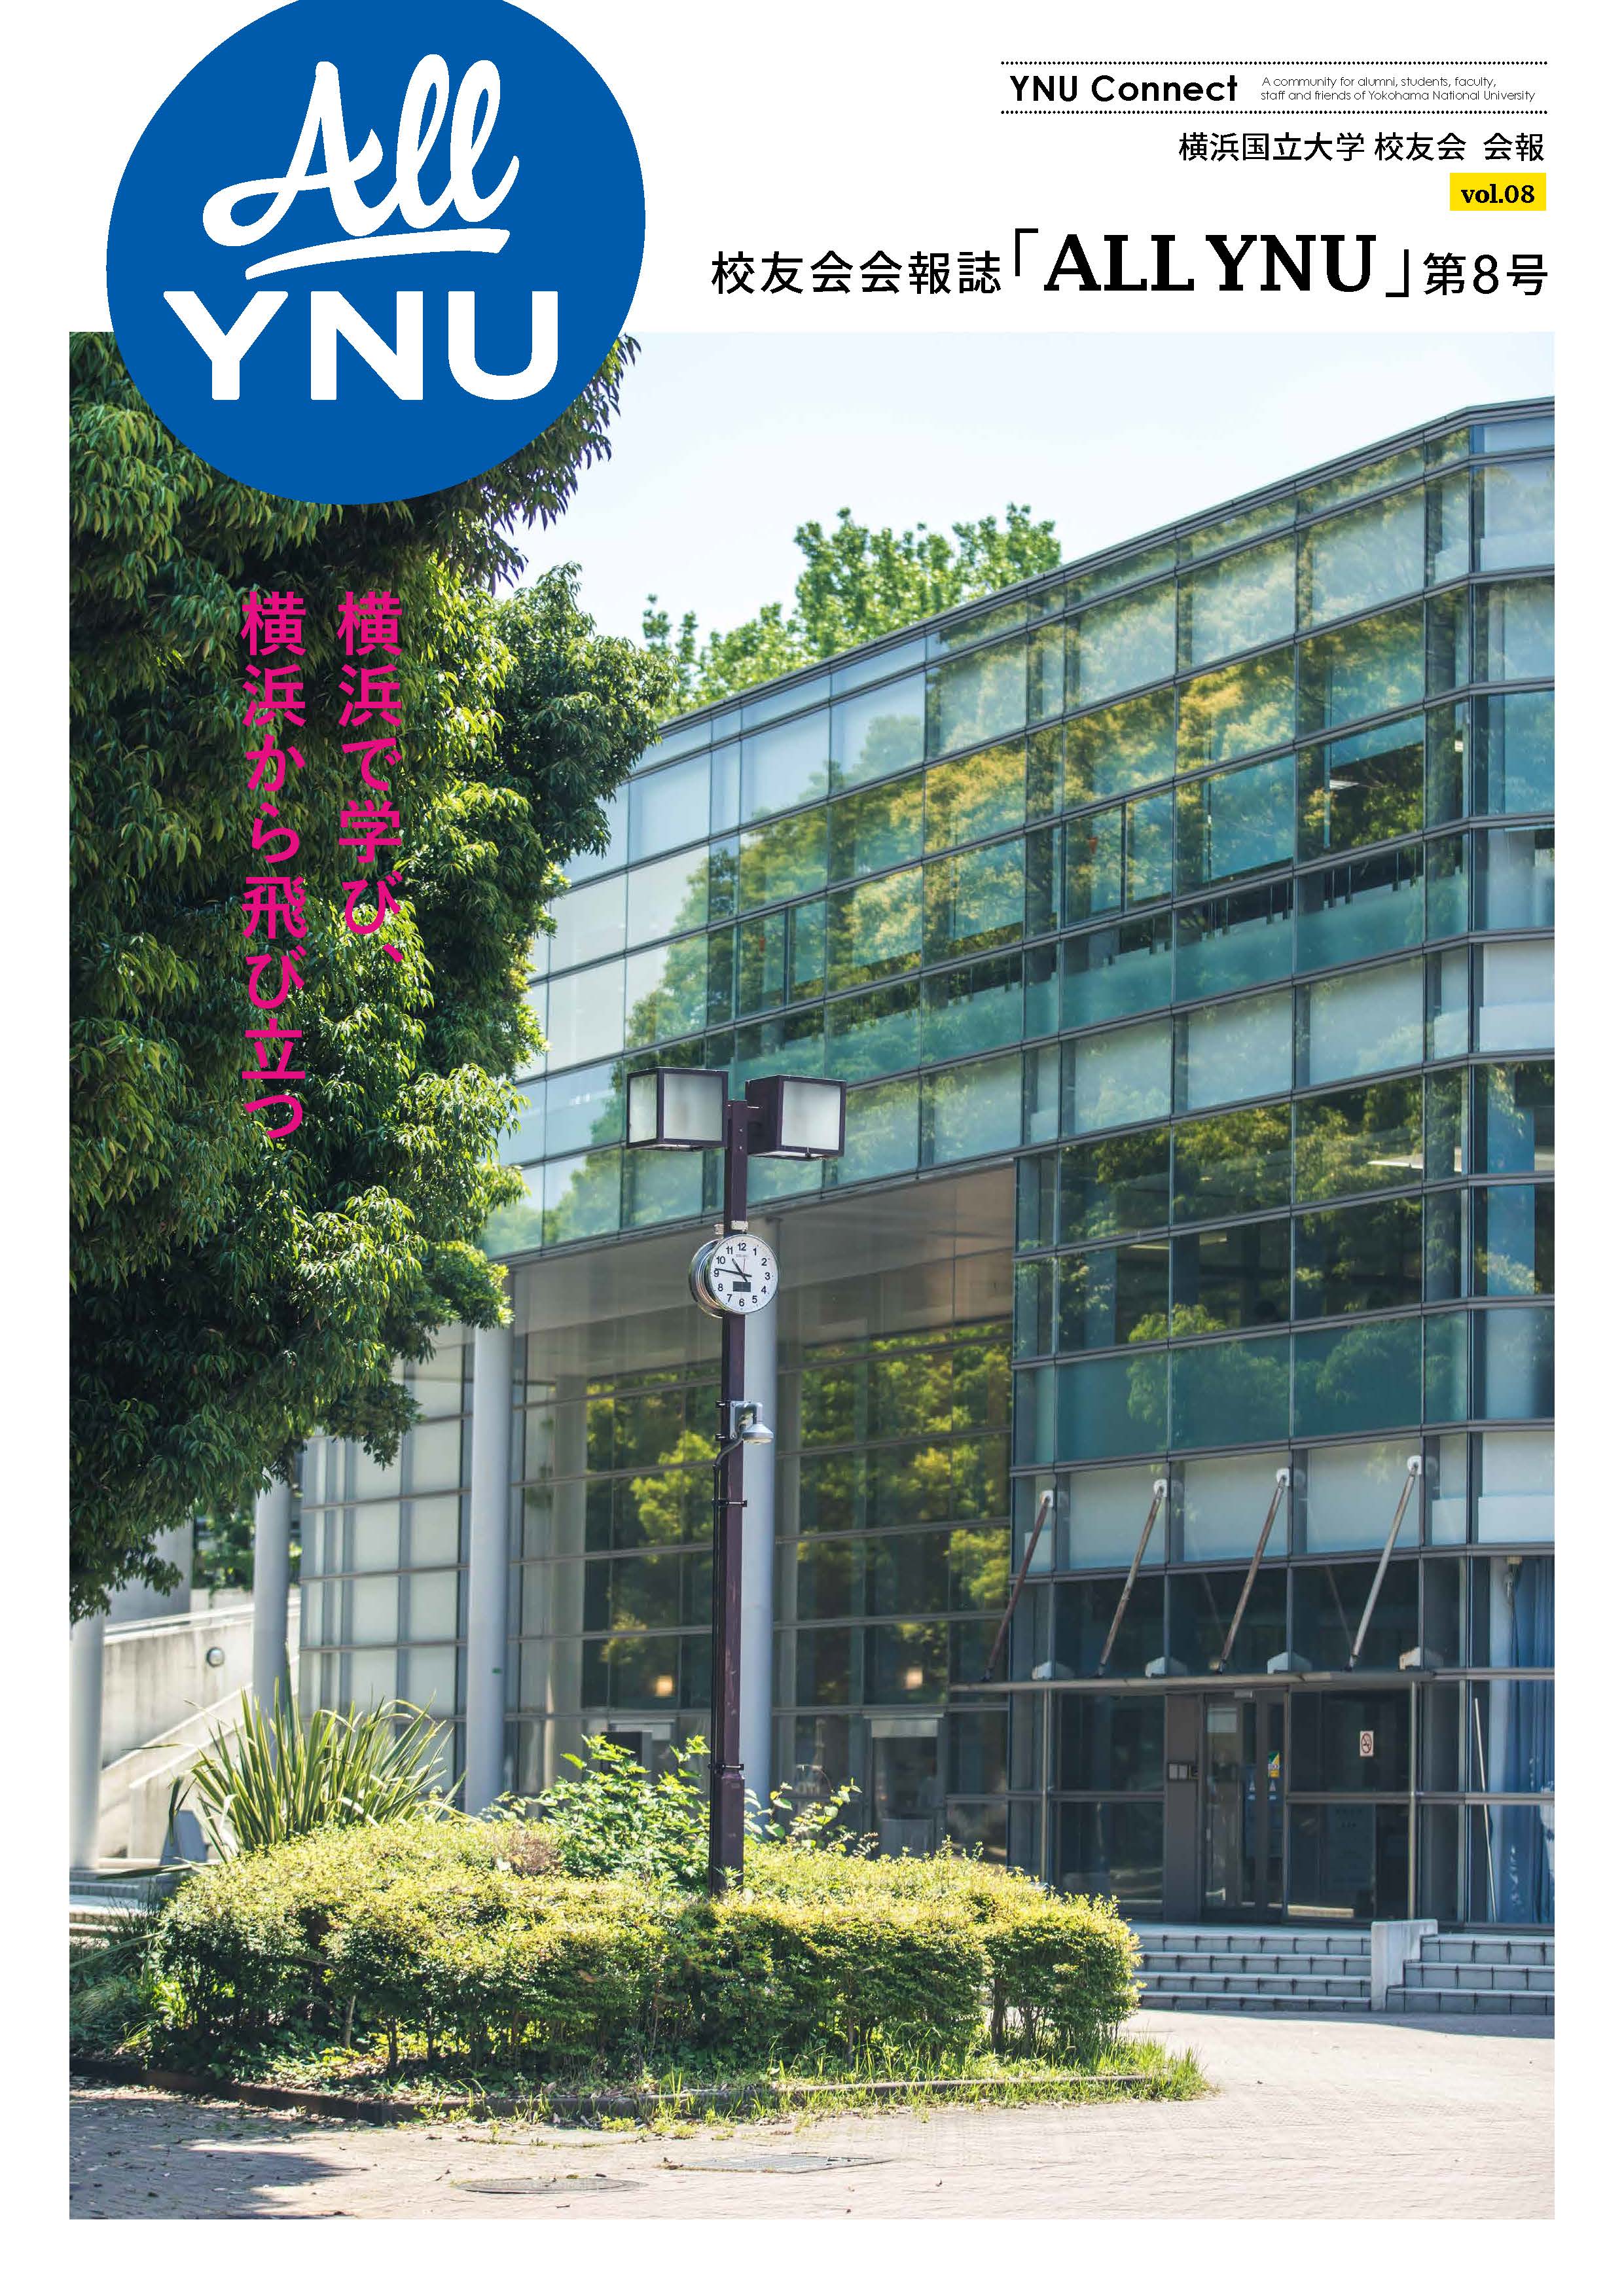 2022年8月発刊校友会会報誌「ALLYNU」vol.08　第8号